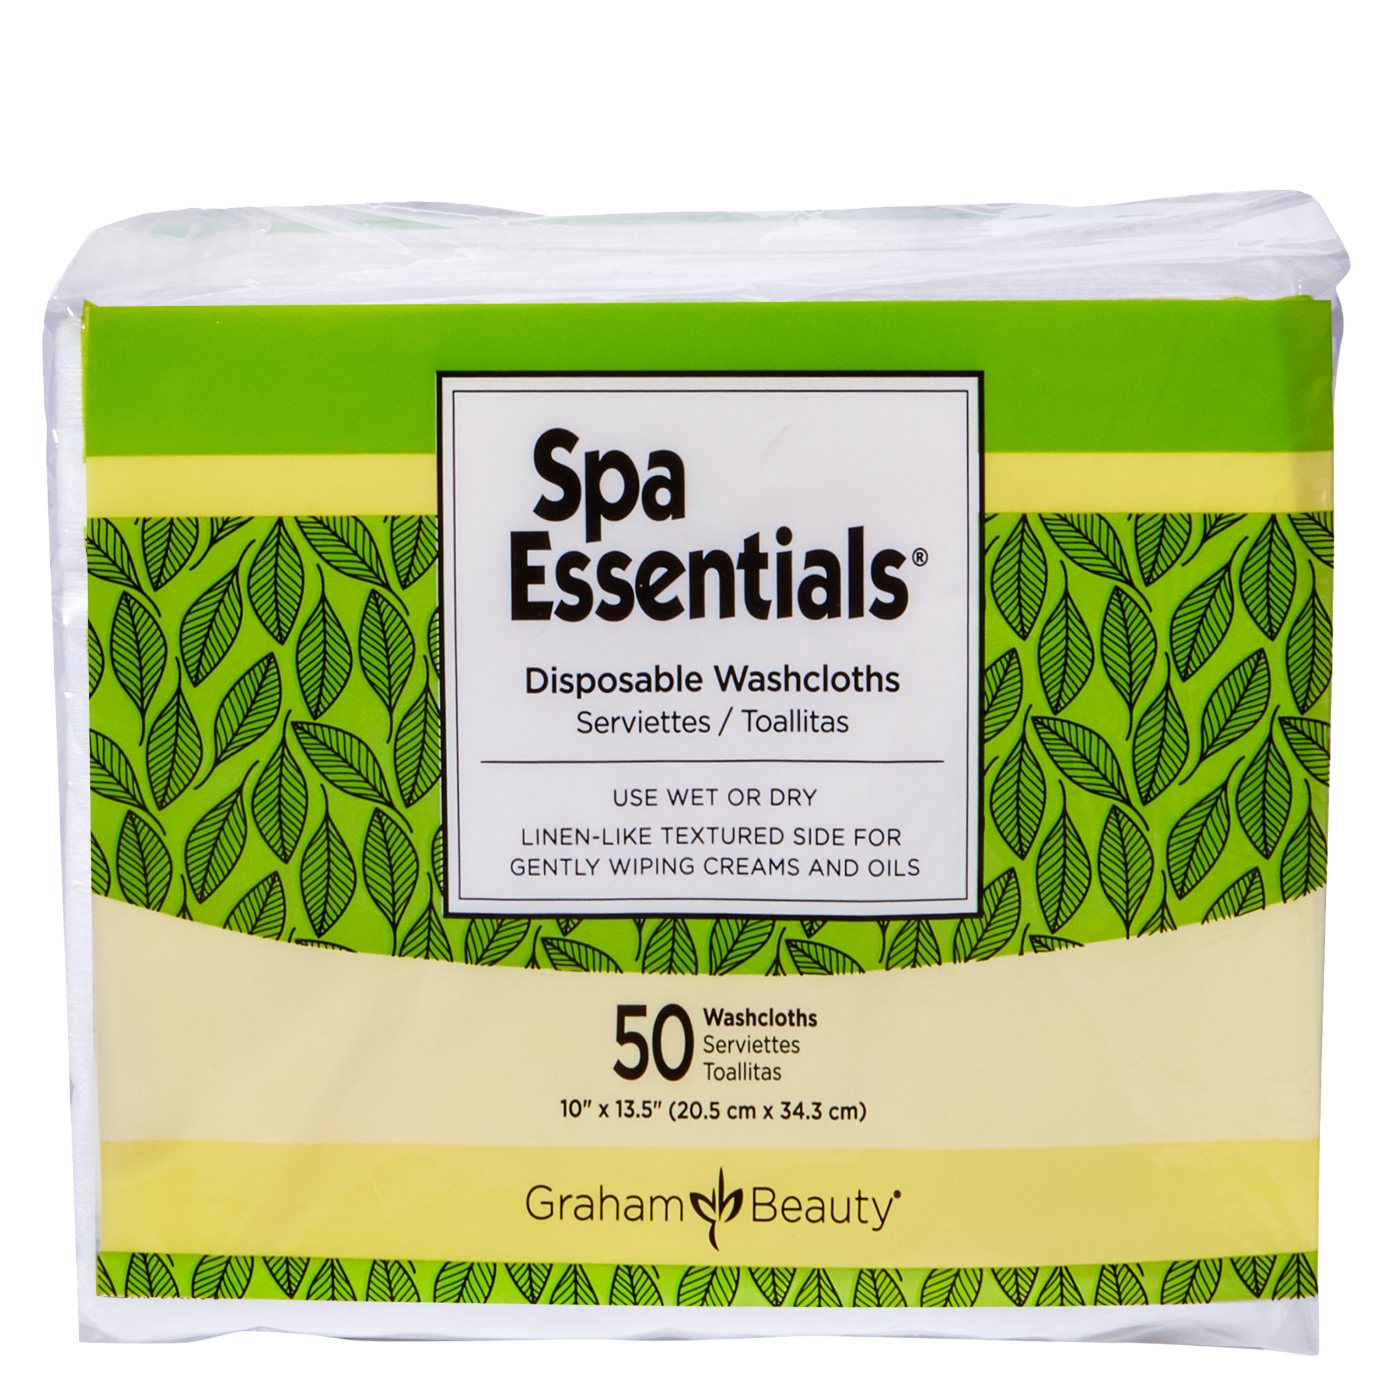 Spa Essentials® Disposable Washcloths